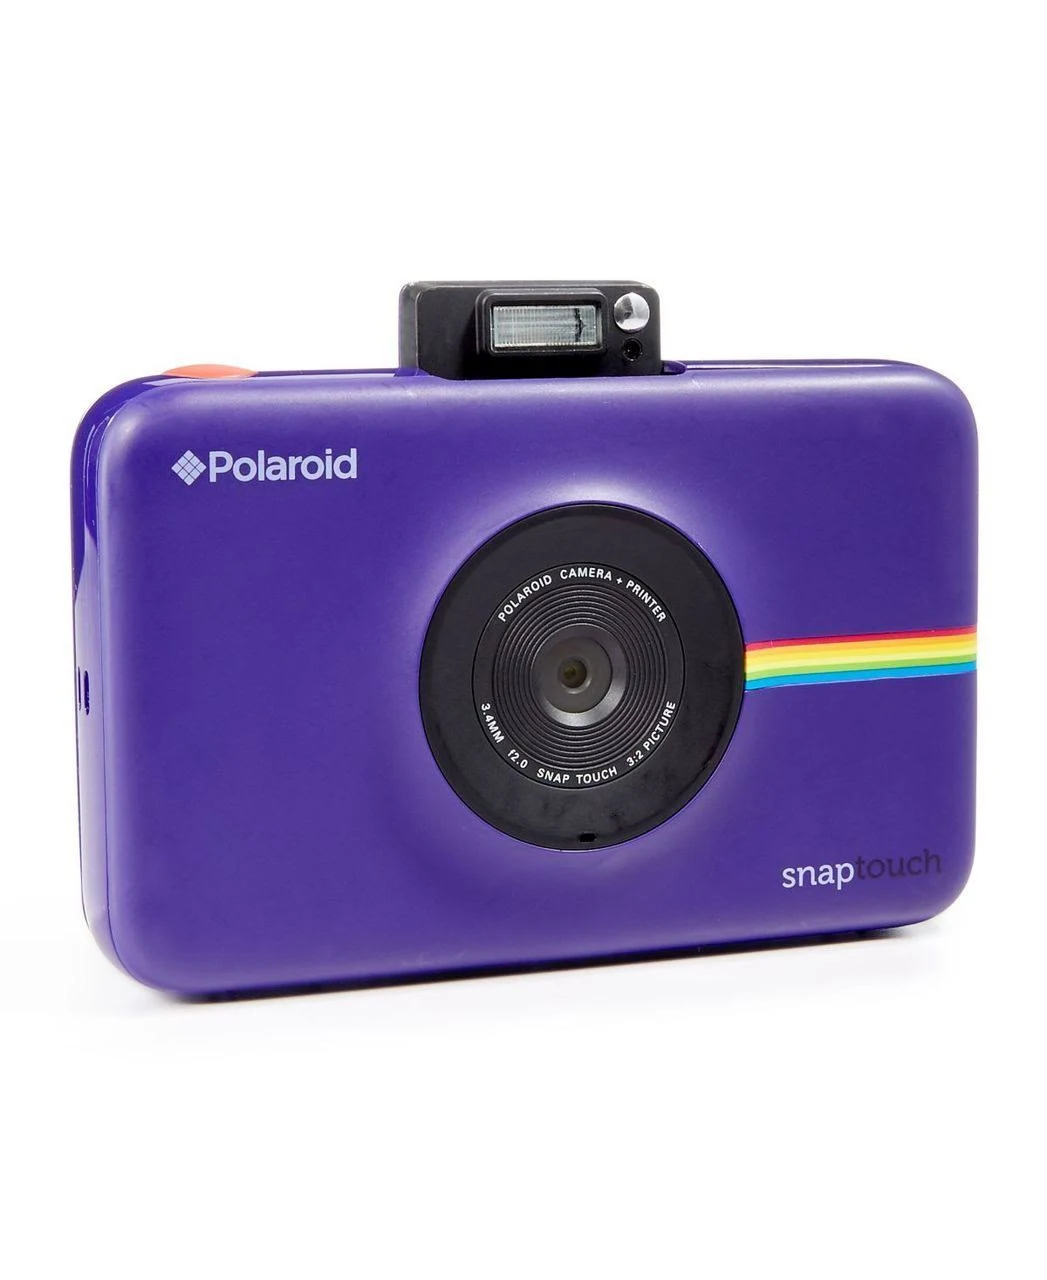 Polaroid كاميرا رقمية بطباعة فورية تعمل باللمس مع شاشة LCD (أرجوانية) مع تقنية الطباعة Zink Zero Ink